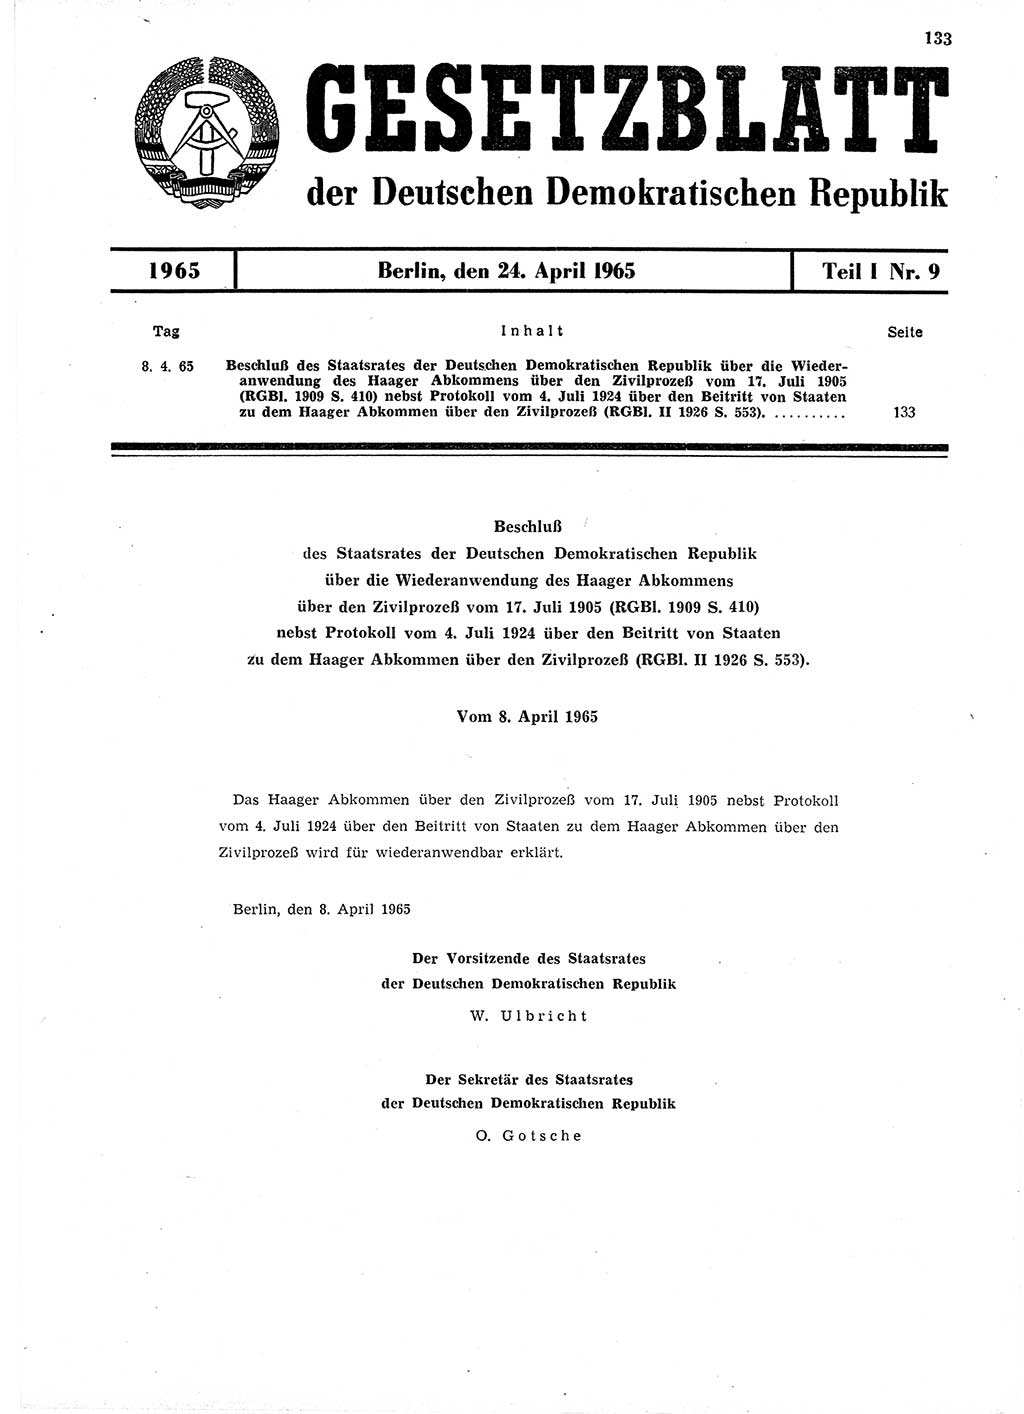 Gesetzblatt (GBl.) der Deutschen Demokratischen Republik (DDR) Teil Ⅰ 1965, Seite 133 (GBl. DDR Ⅰ 1965, S. 133)